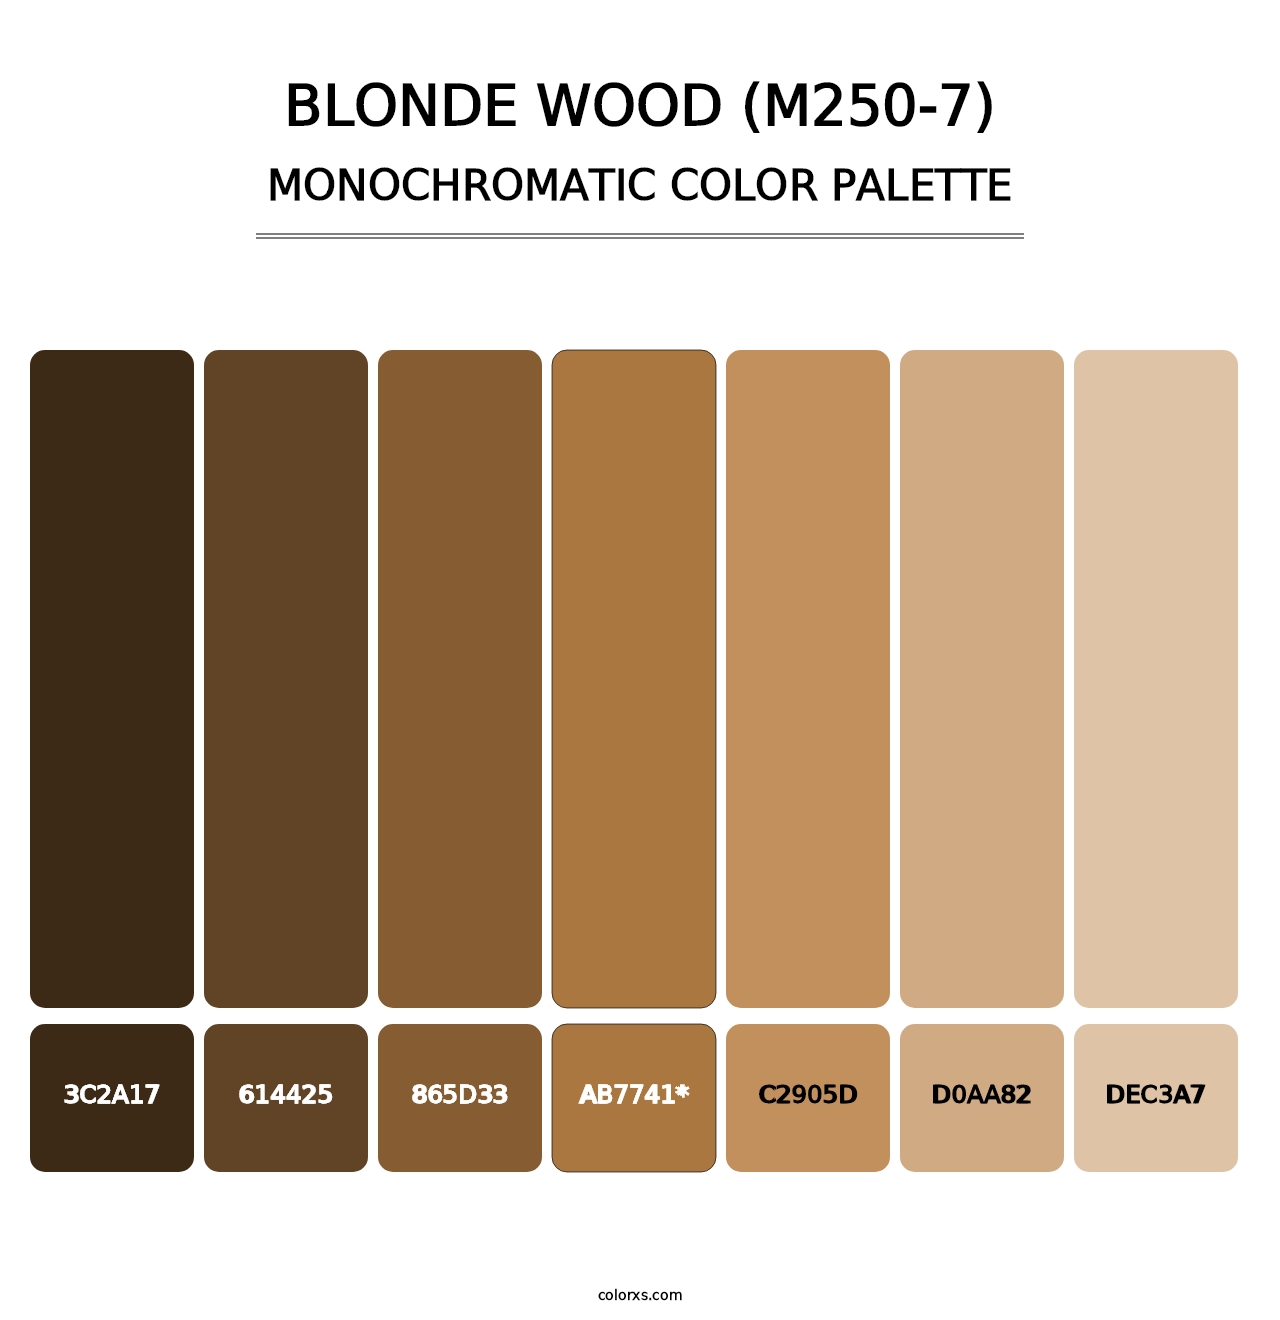 Blonde Wood (M250-7) - Monochromatic Color Palette